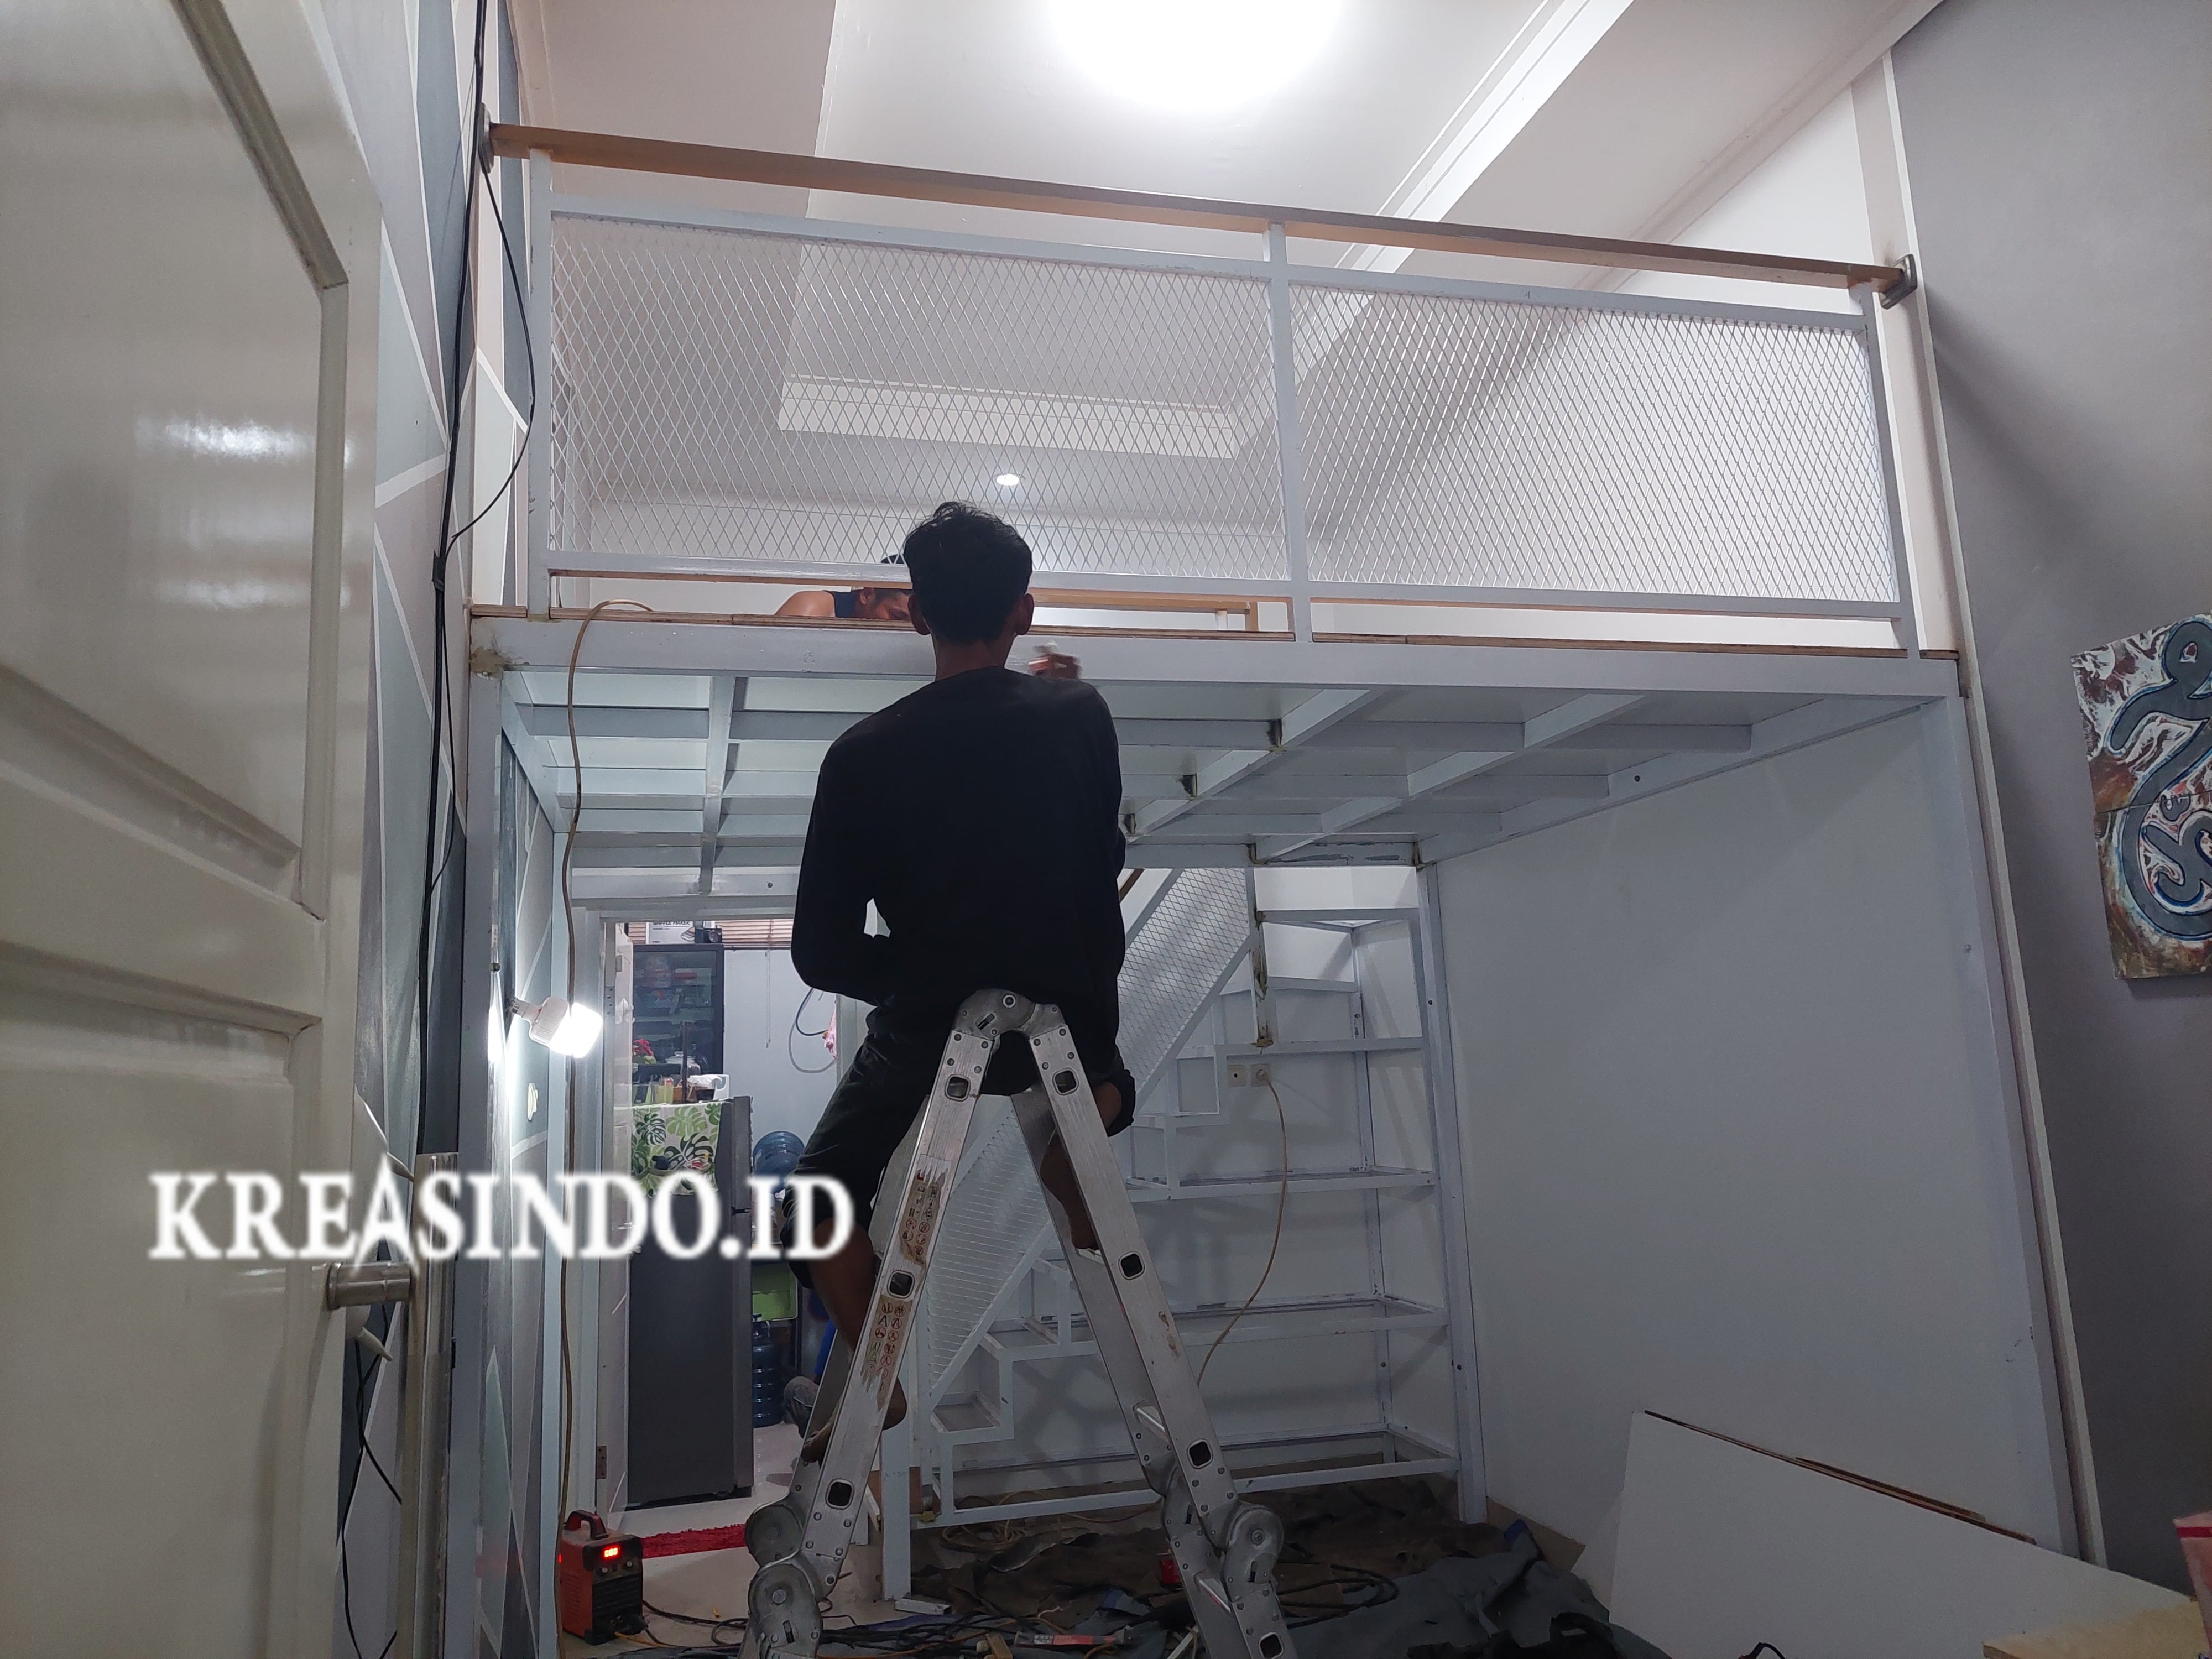 Penampakan Hasil Pemasangan Mezzanine Besi di Atas Ruang Tamu Pesanan Bpk Syaiful di Jatisampurna Bekasi